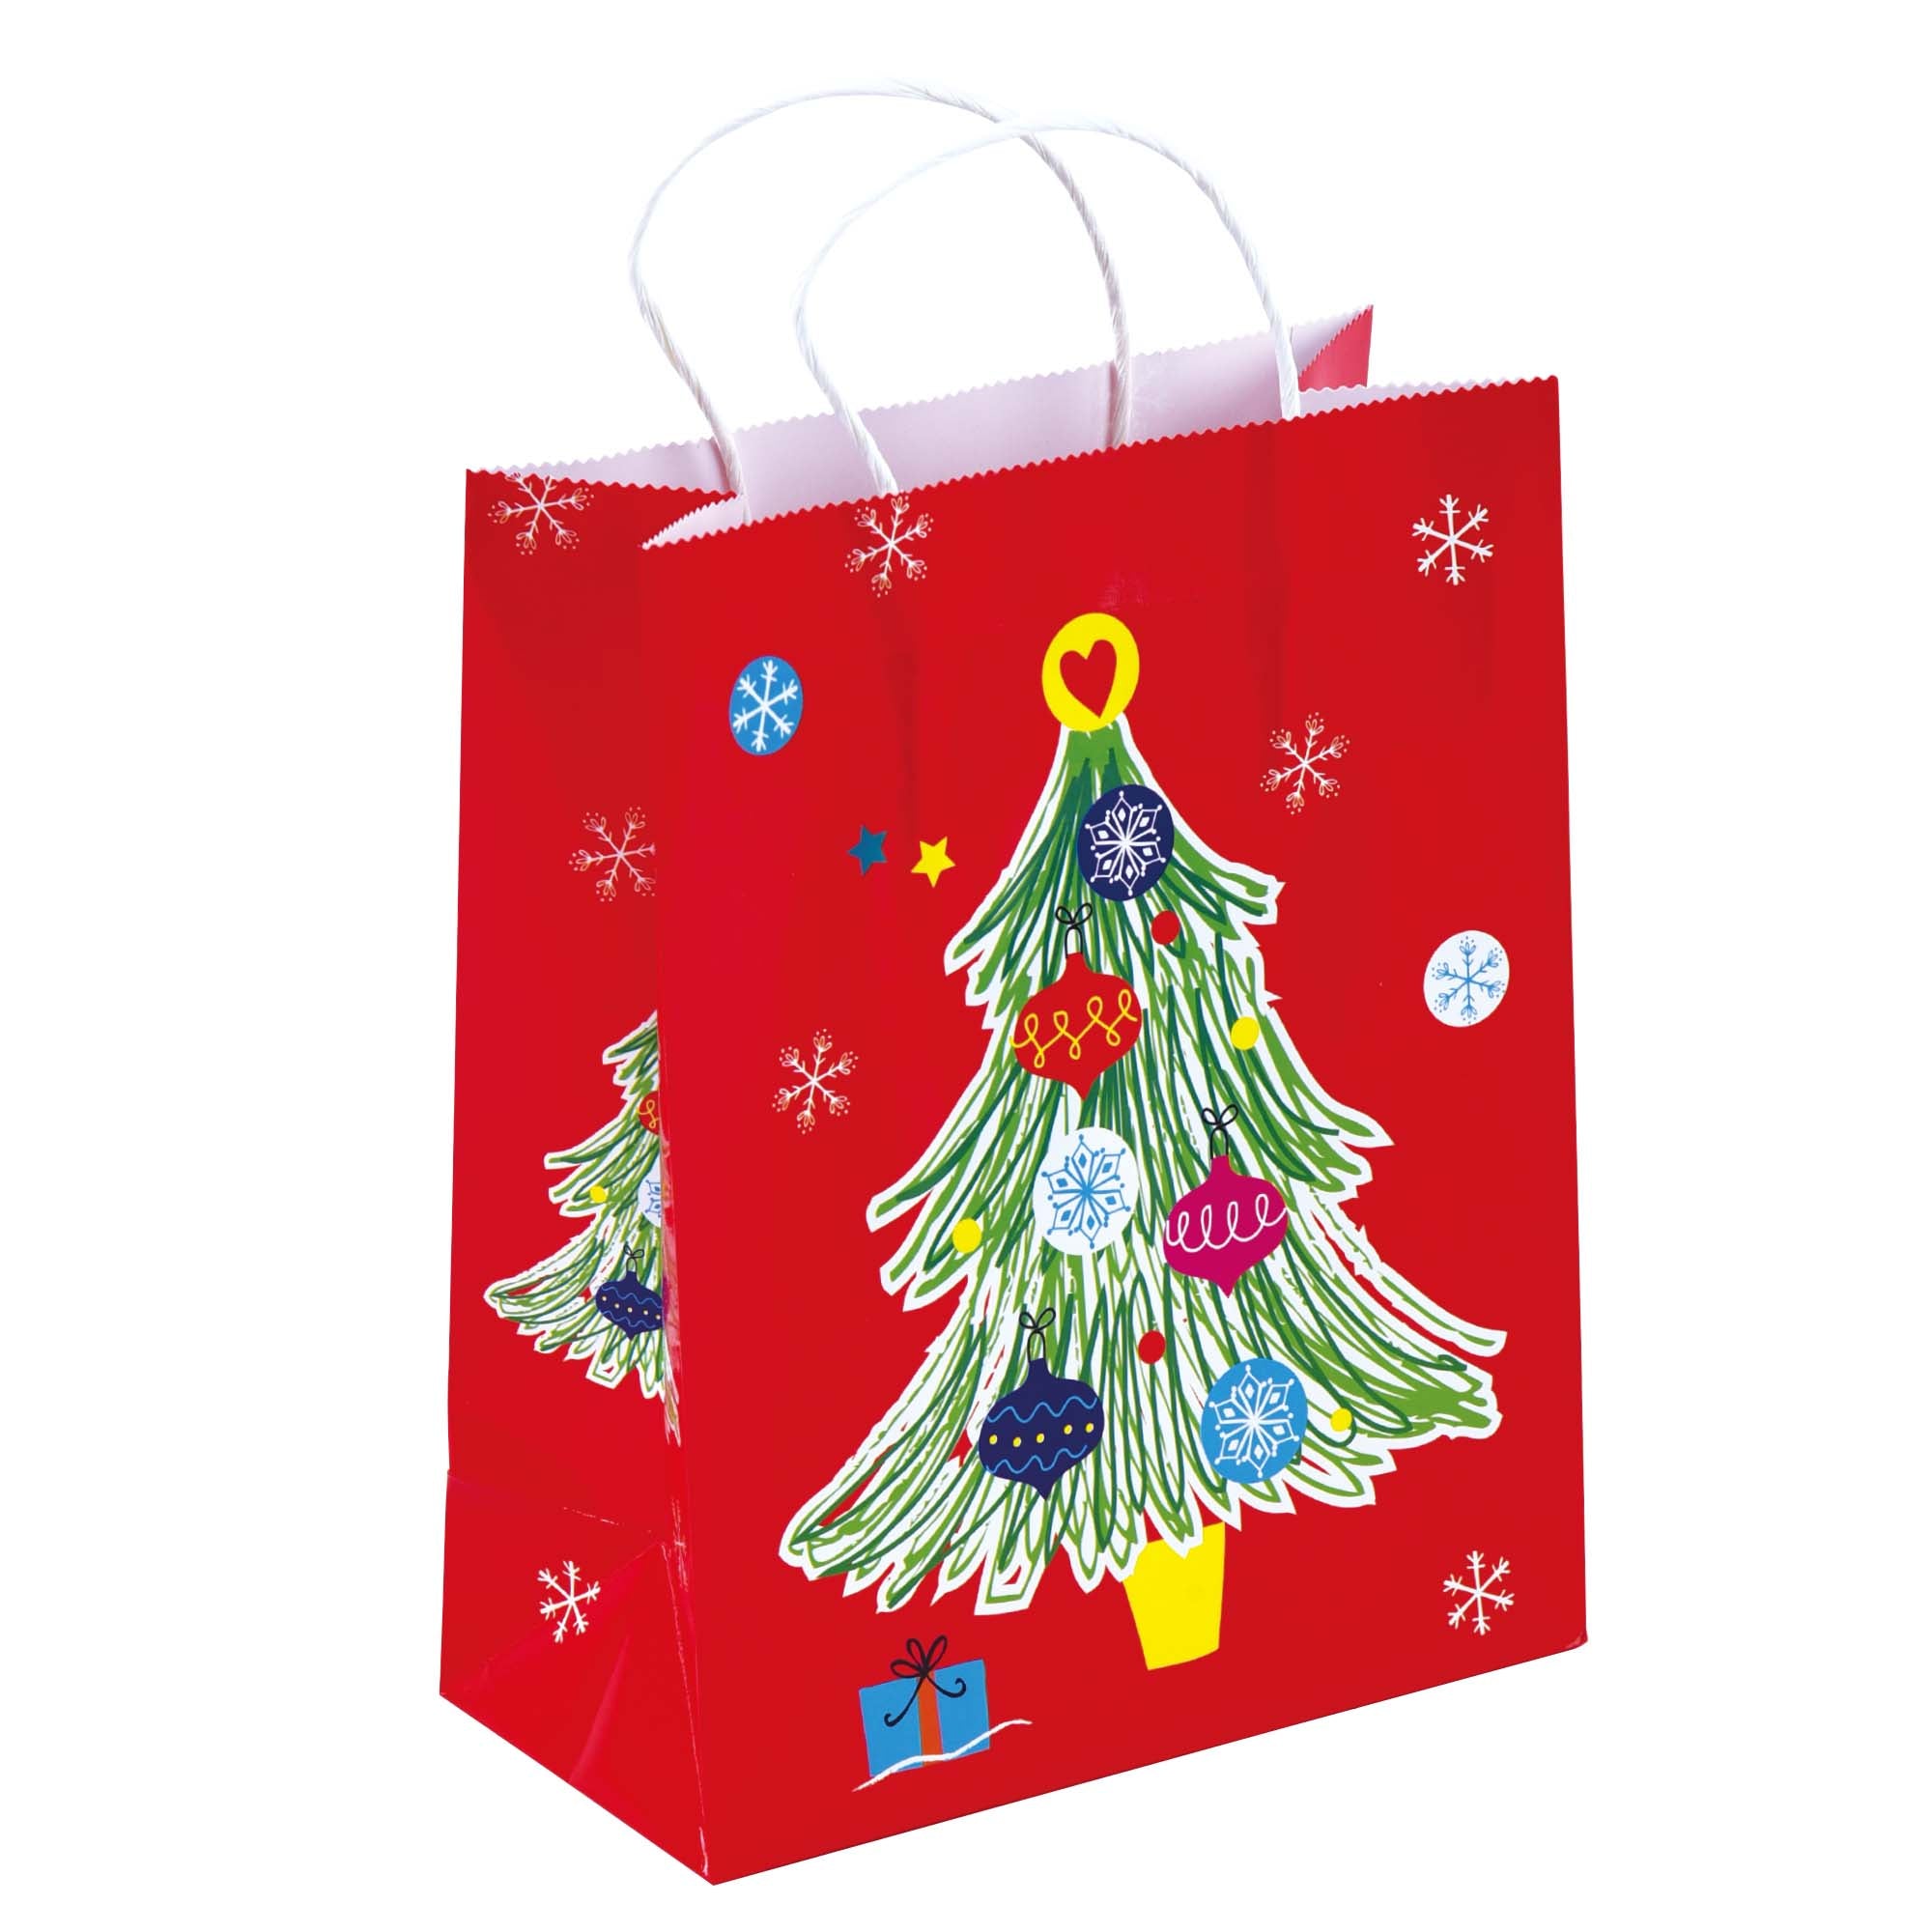 Be Still - Medium Christmas Gift Bag